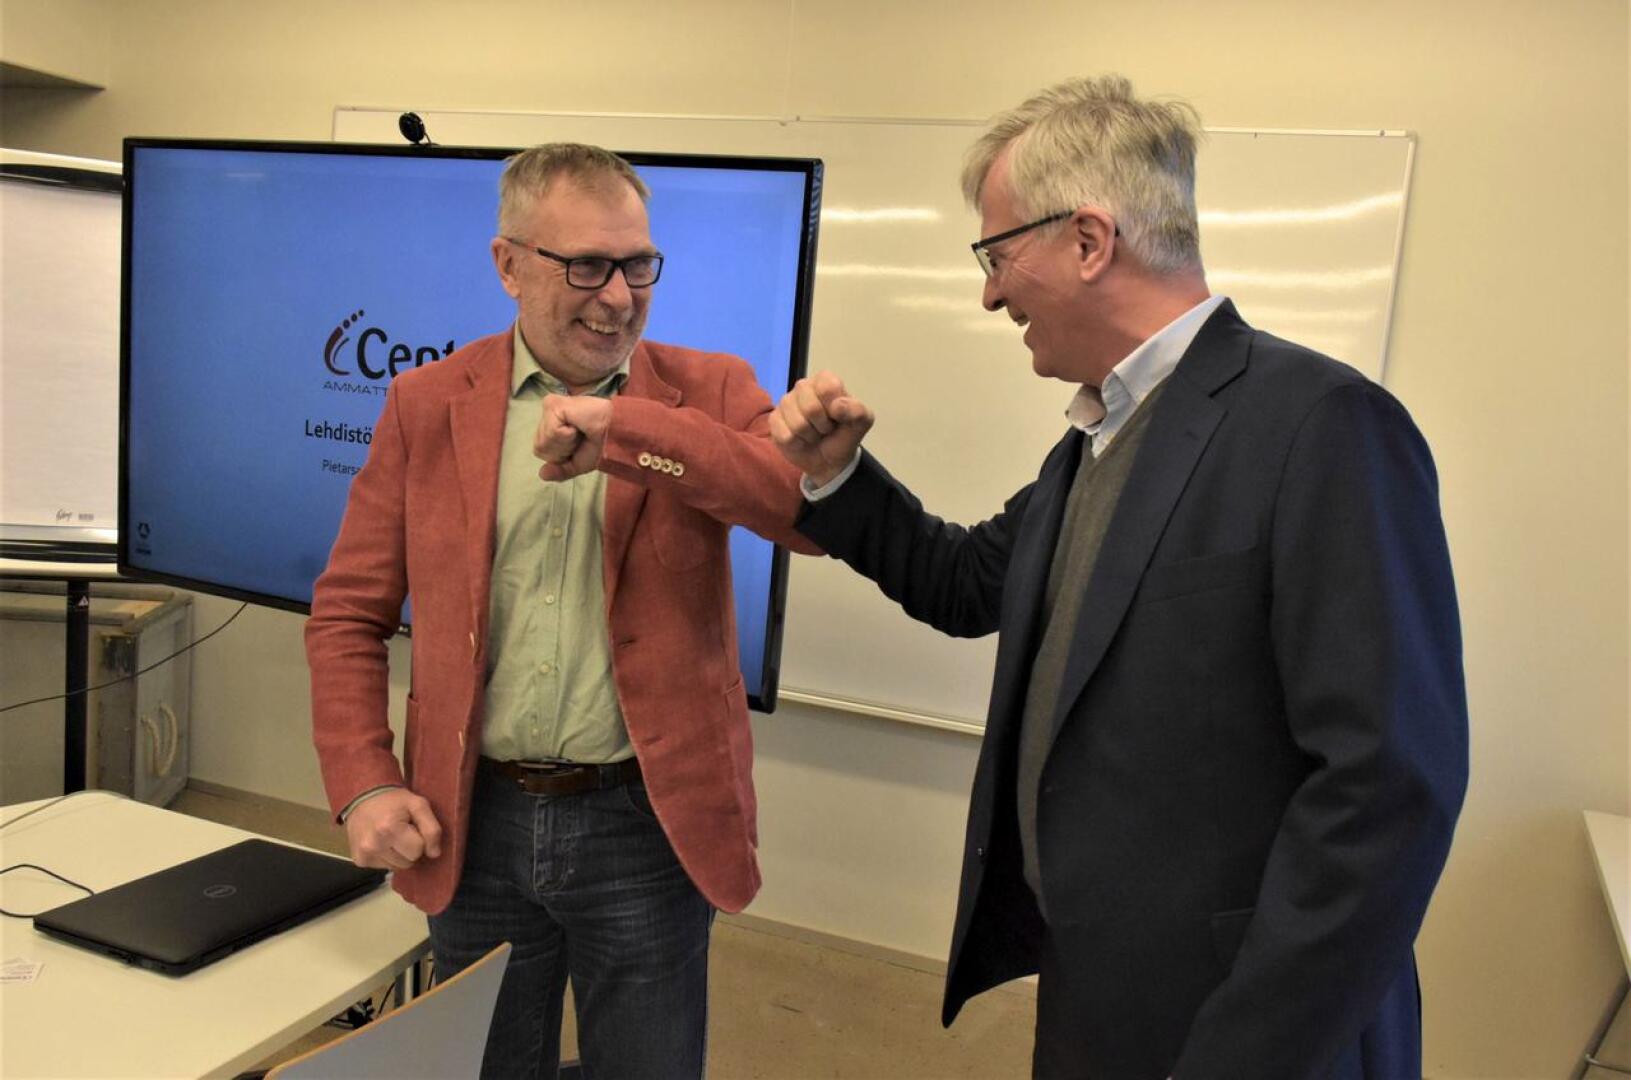 Centrian rehtori Kari Ristimäki ja Concordian toimitusjohtaja Jarl Sundqvist  iloitsevat tuoreesta koulutussopimuksesta, joka on alueella ainutlaatuinen.